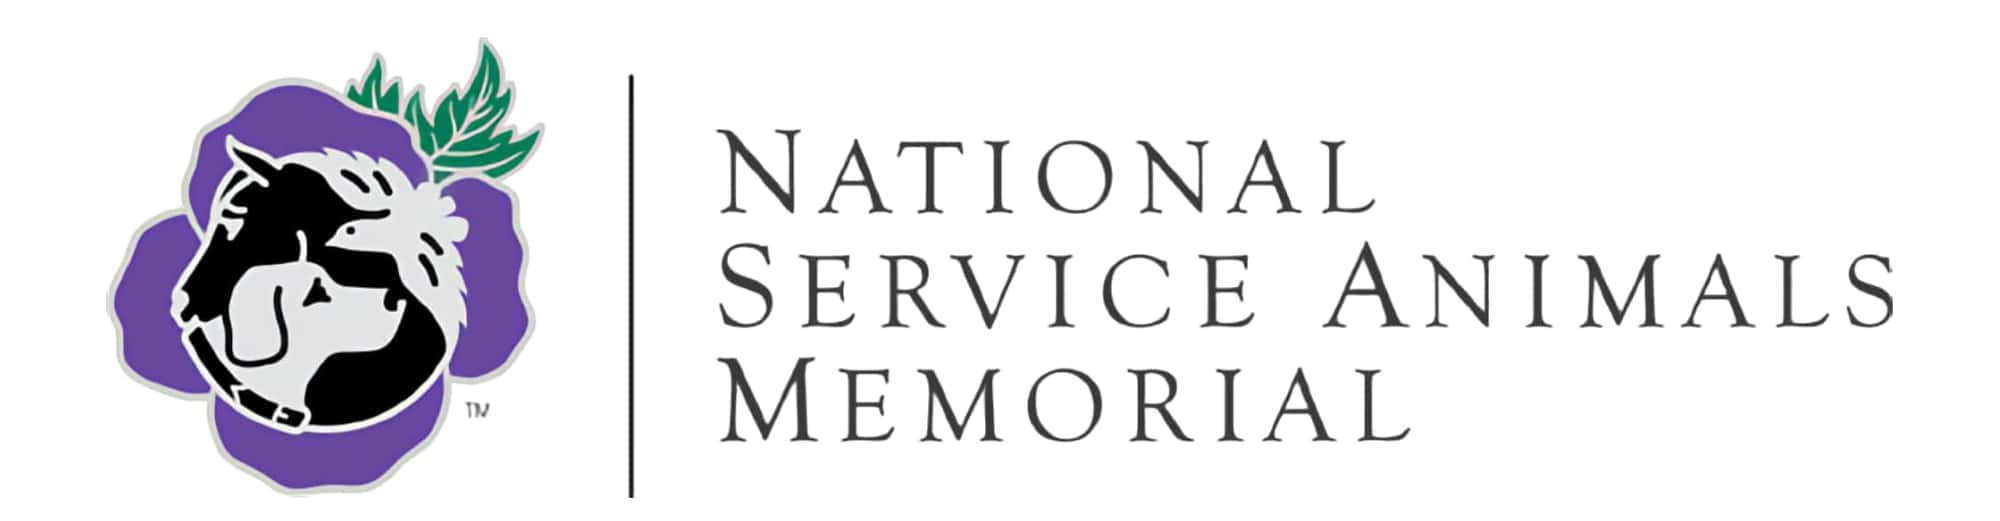 National Service Animals Memorial (USA) (Copy)